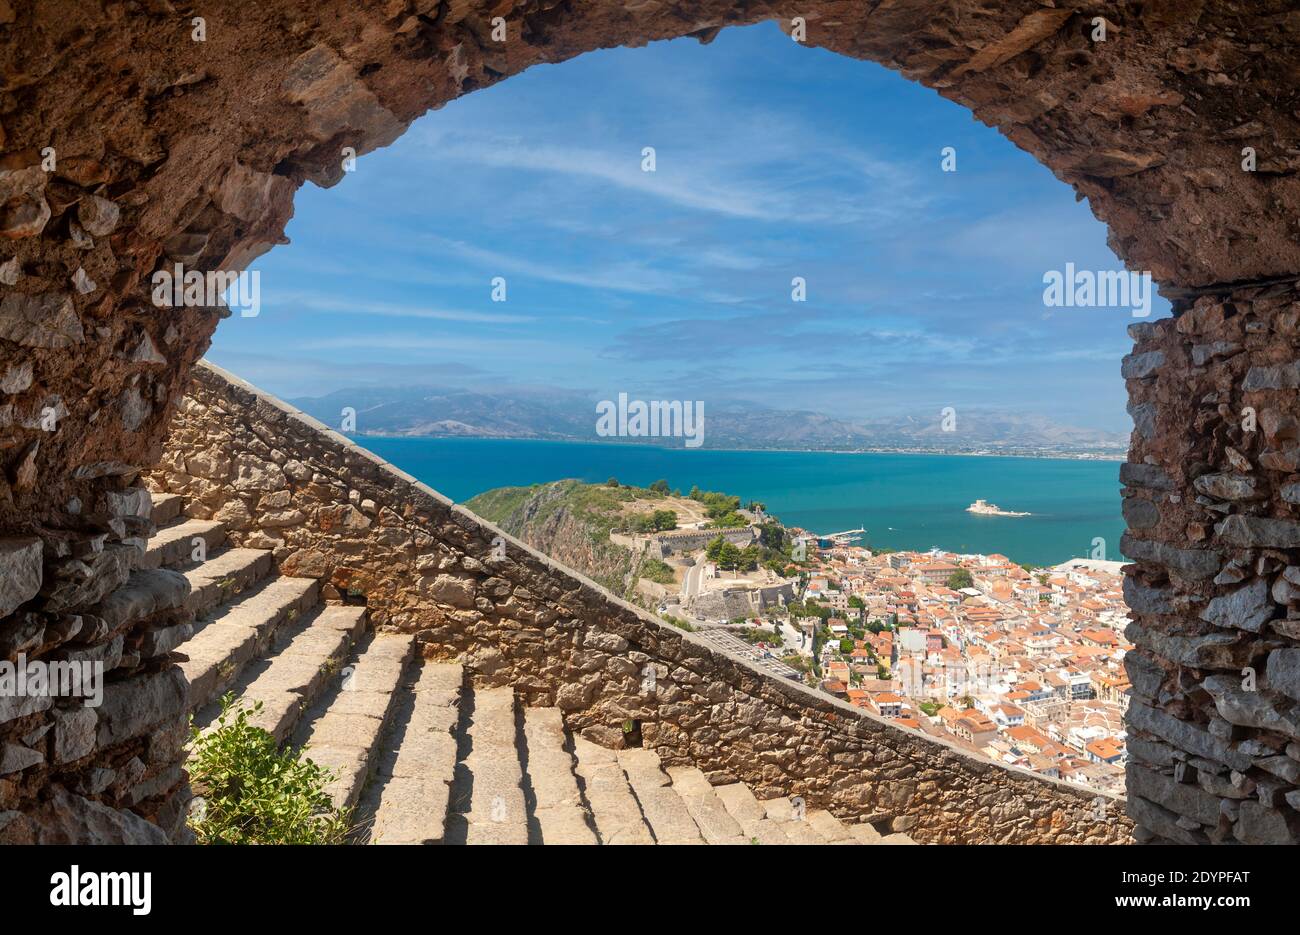 Vista panoramica della città di Nafplio dal castello medievale di Palamidi e le mille scale di pietra che conducono in alto (o in basso) il castello, la Grecia, l'Europa Foto Stock